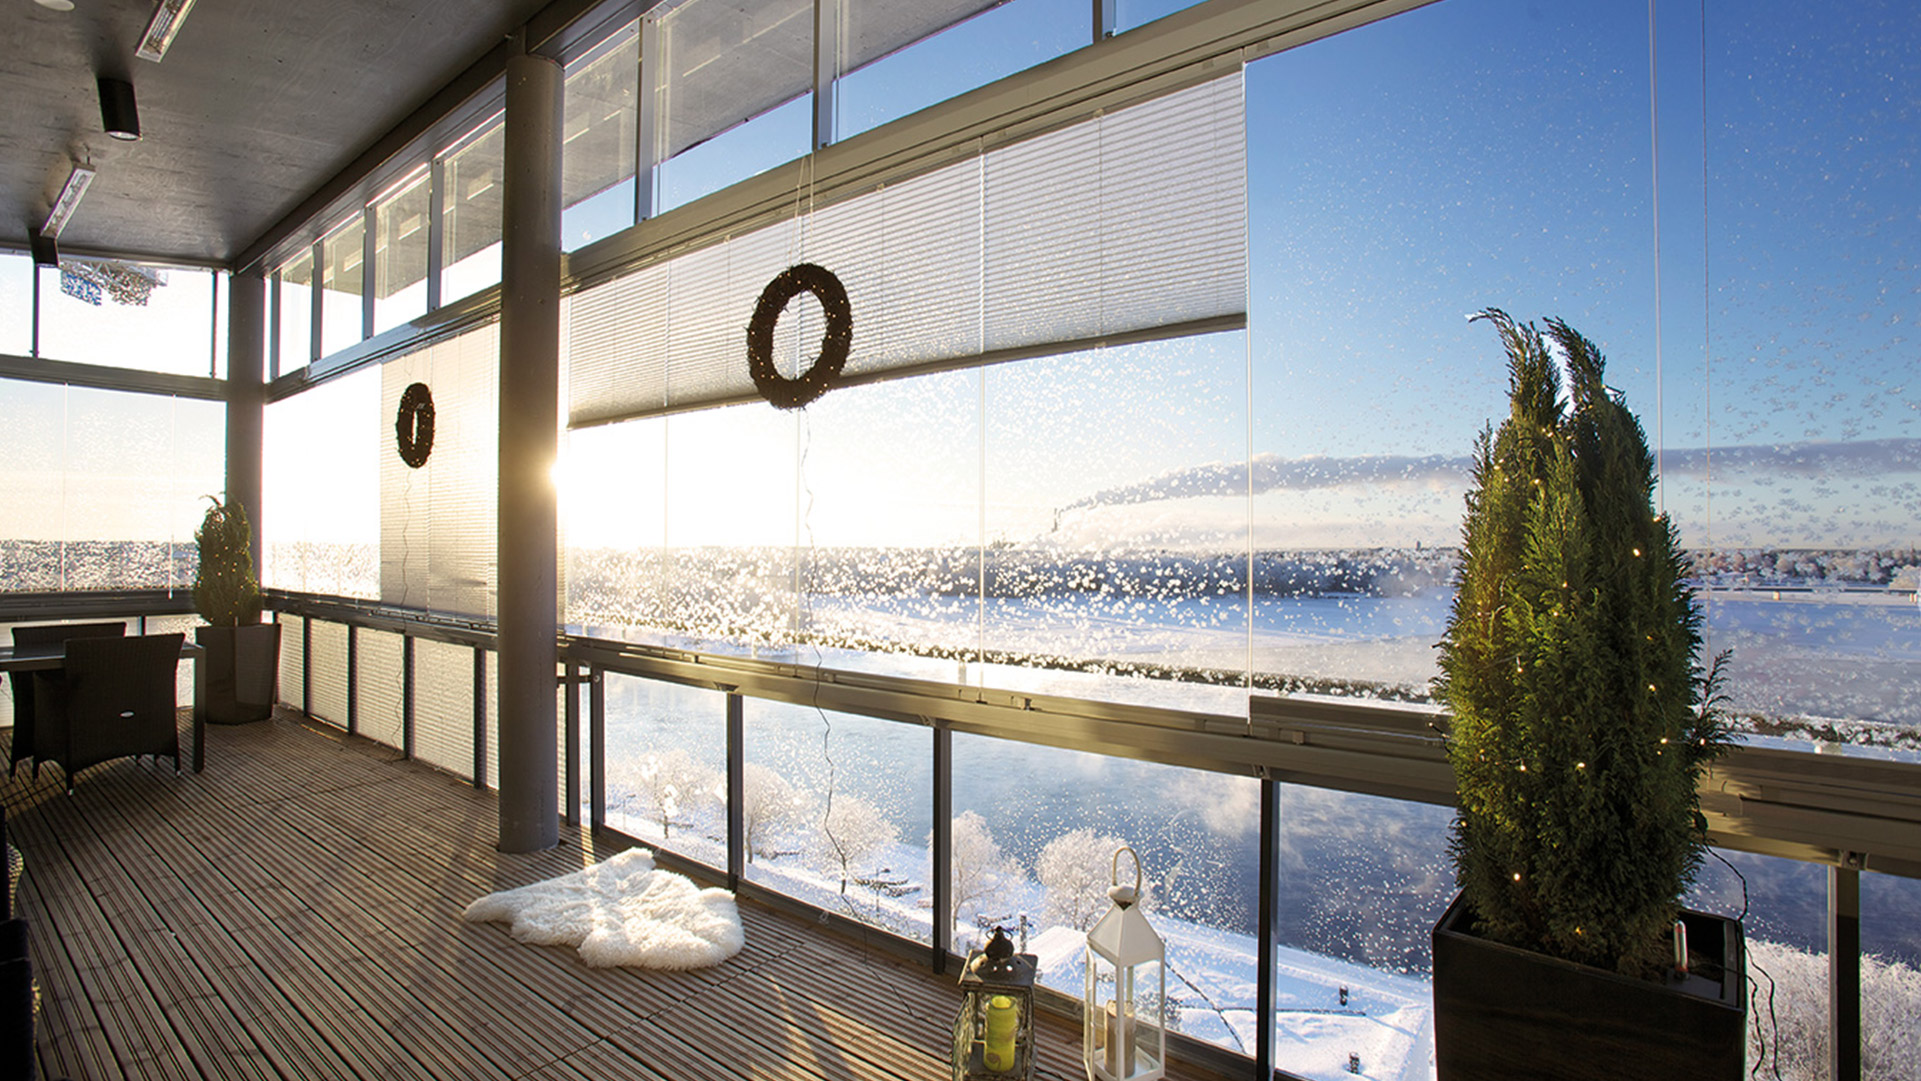 Verglaster Balkon im Winter